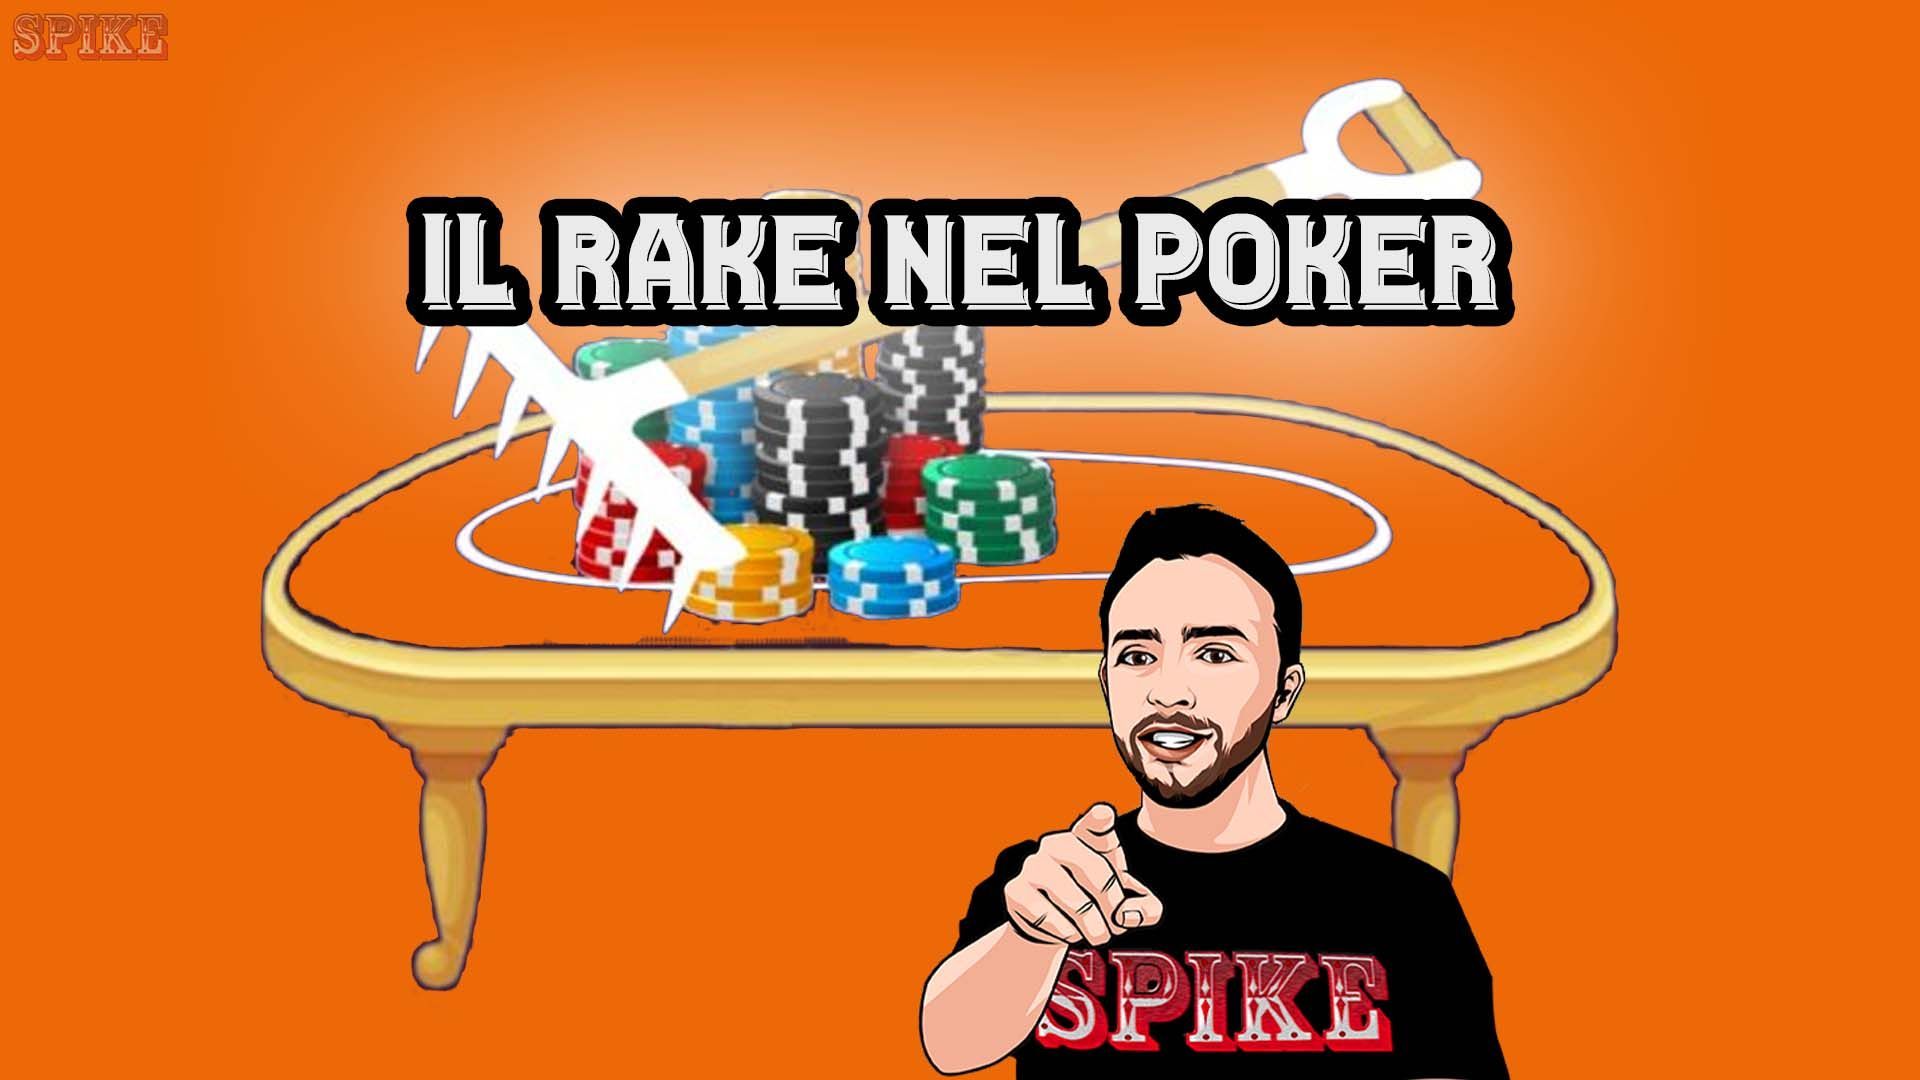 Rake Poker